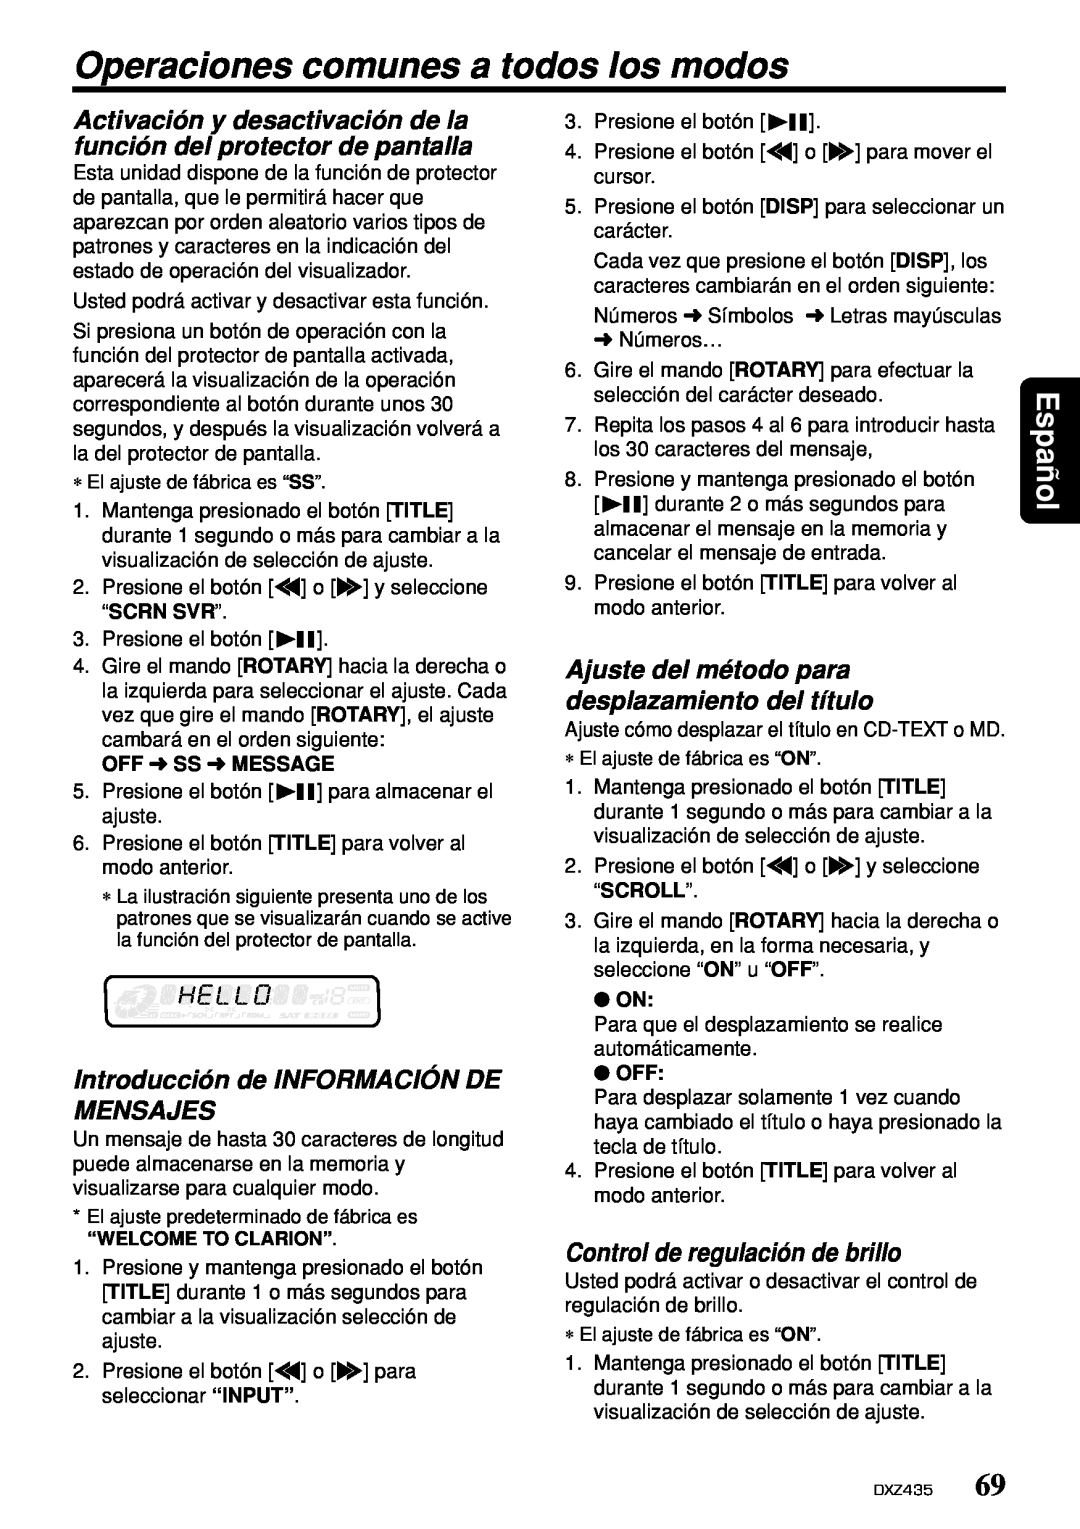 Clarion DXZ435 owner manual Operaciones comunes a todos los modos, Introducción de INFORMACIÓN DE MENSAJES, Español 